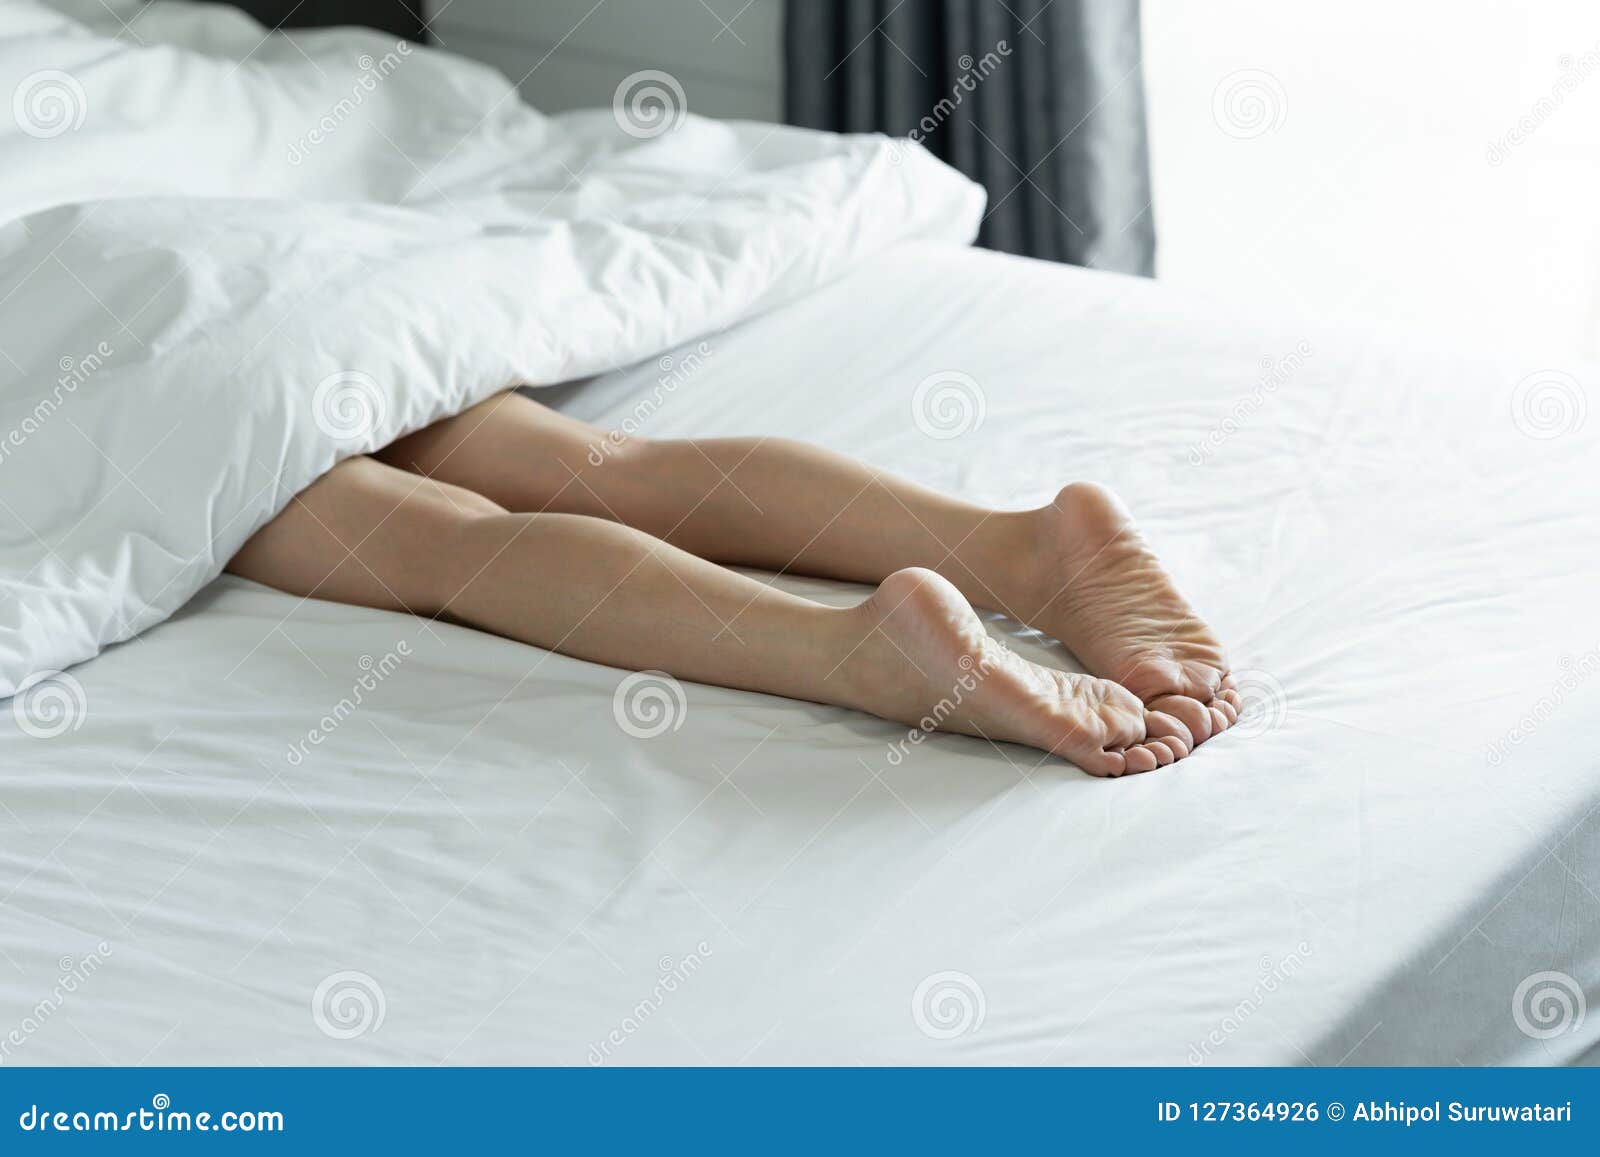 Ножки спящей девочки